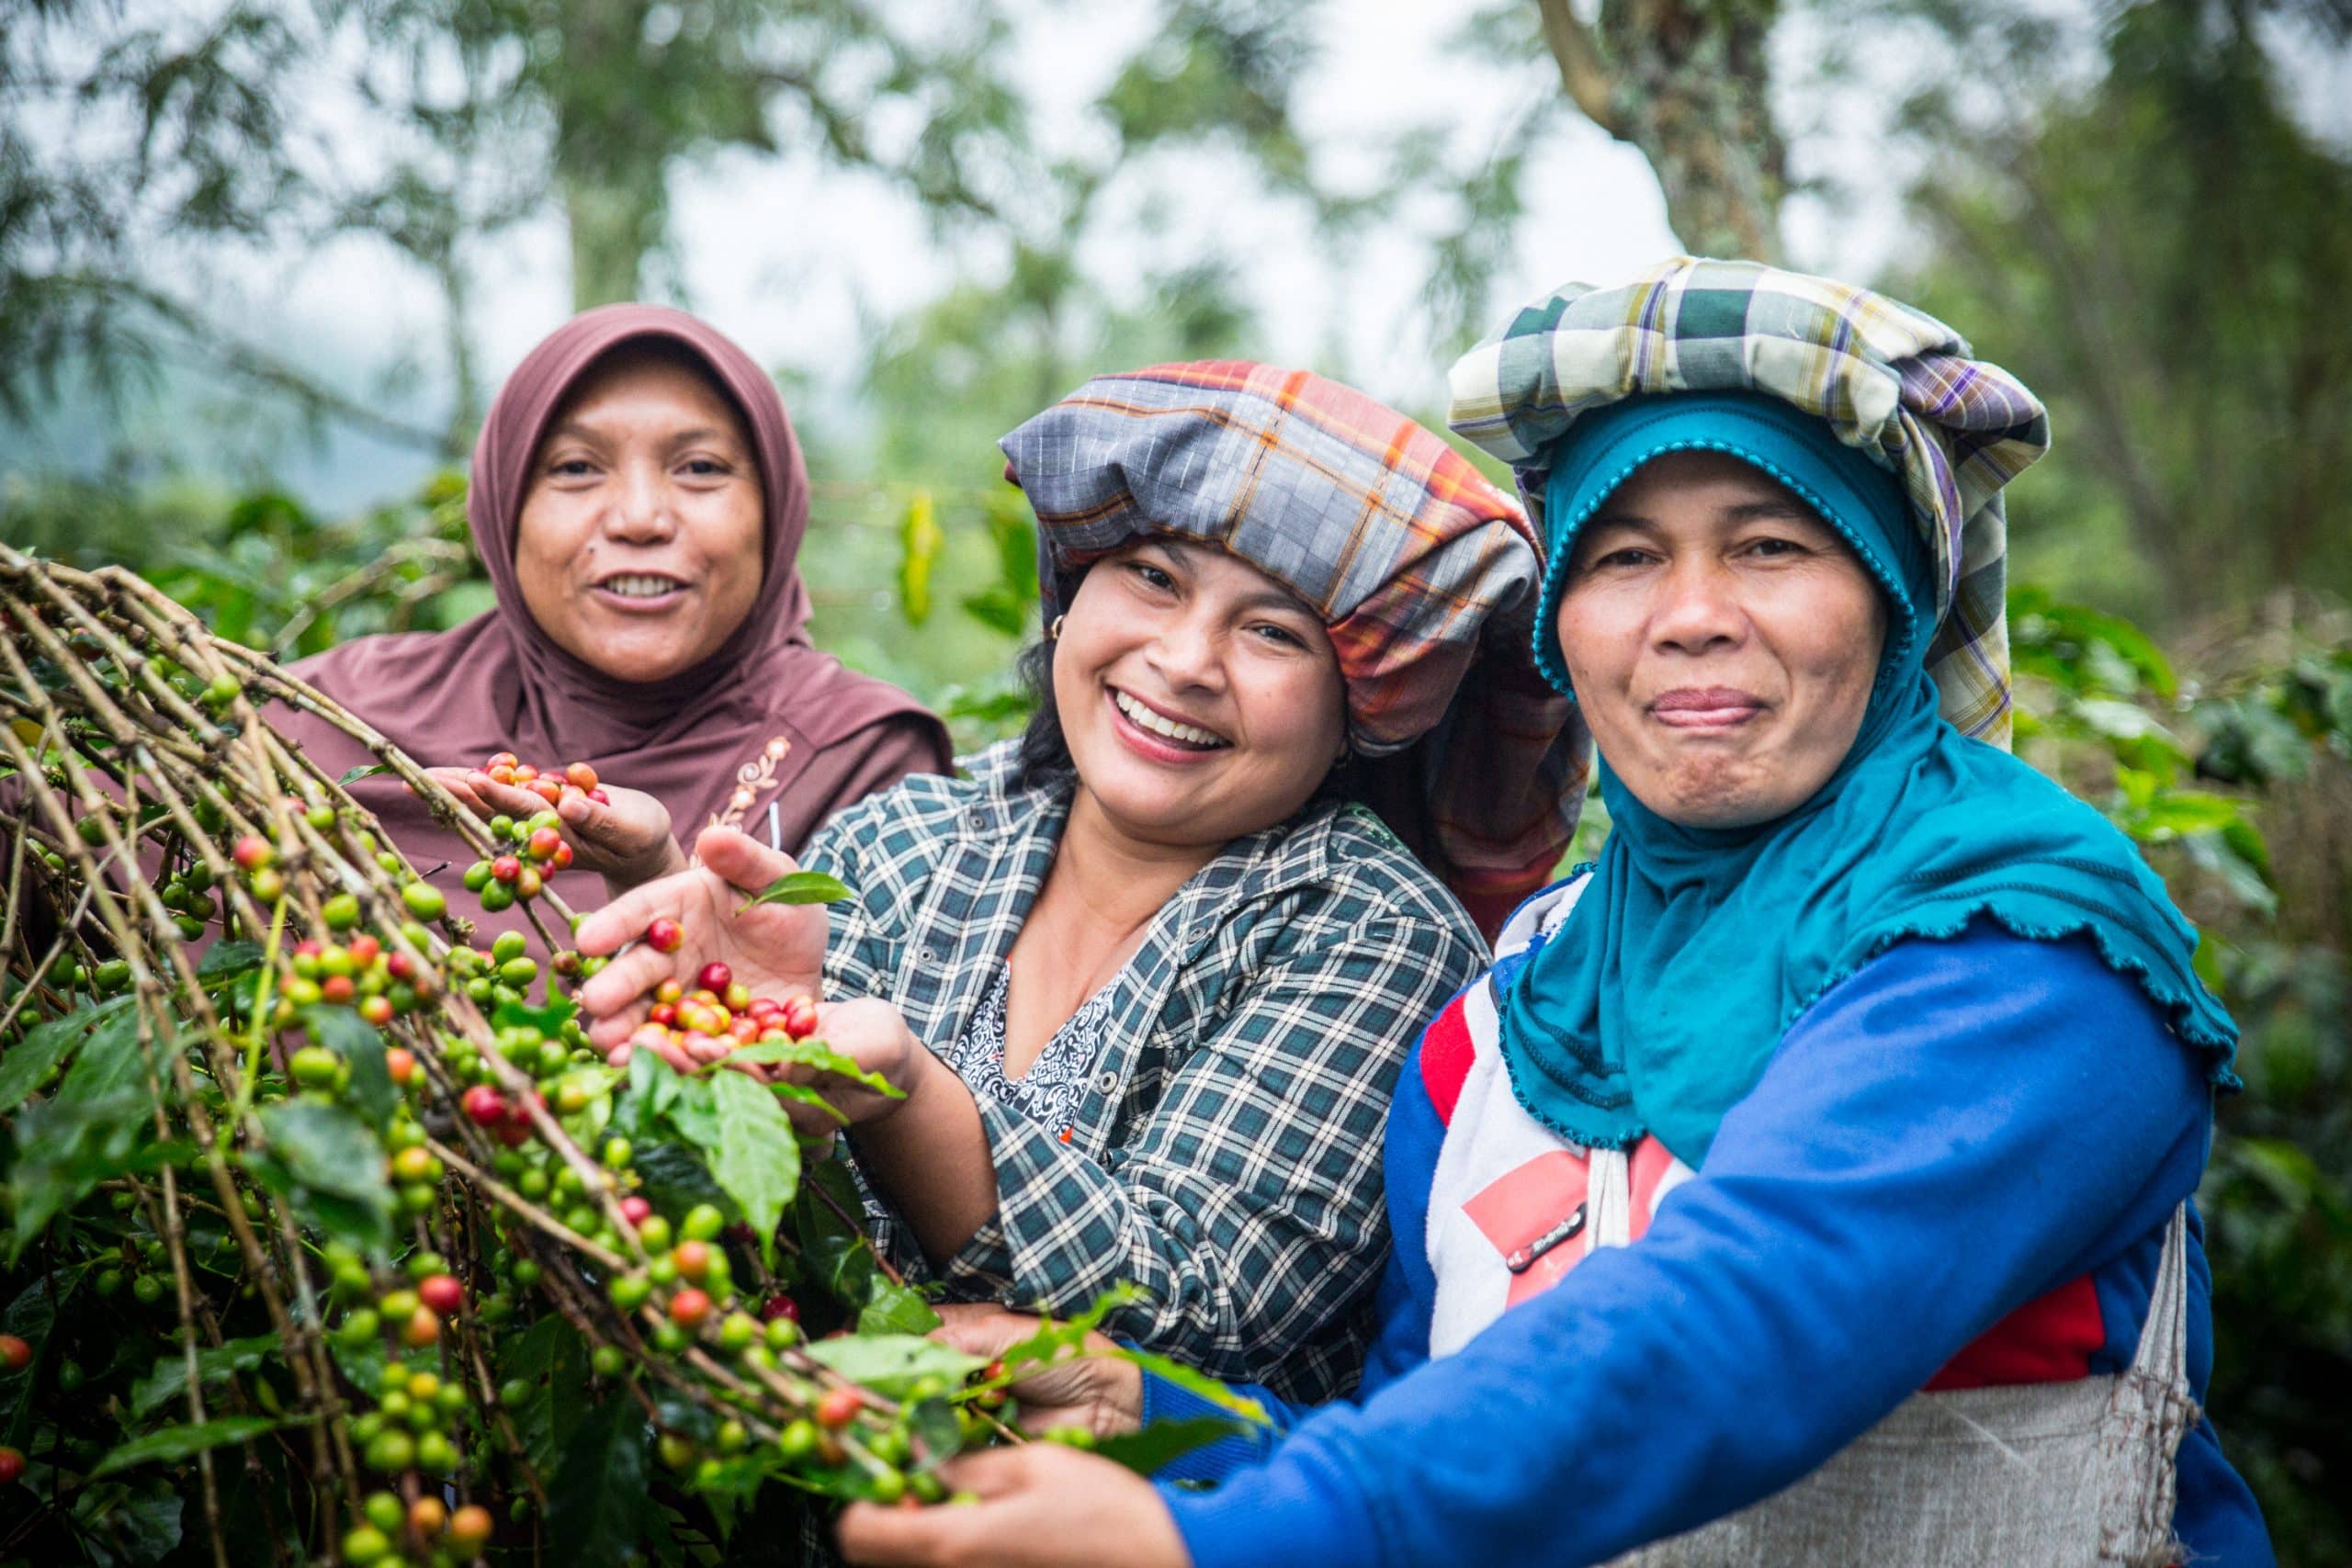 Women in Agriculture Initiative: 2015 Annual Report